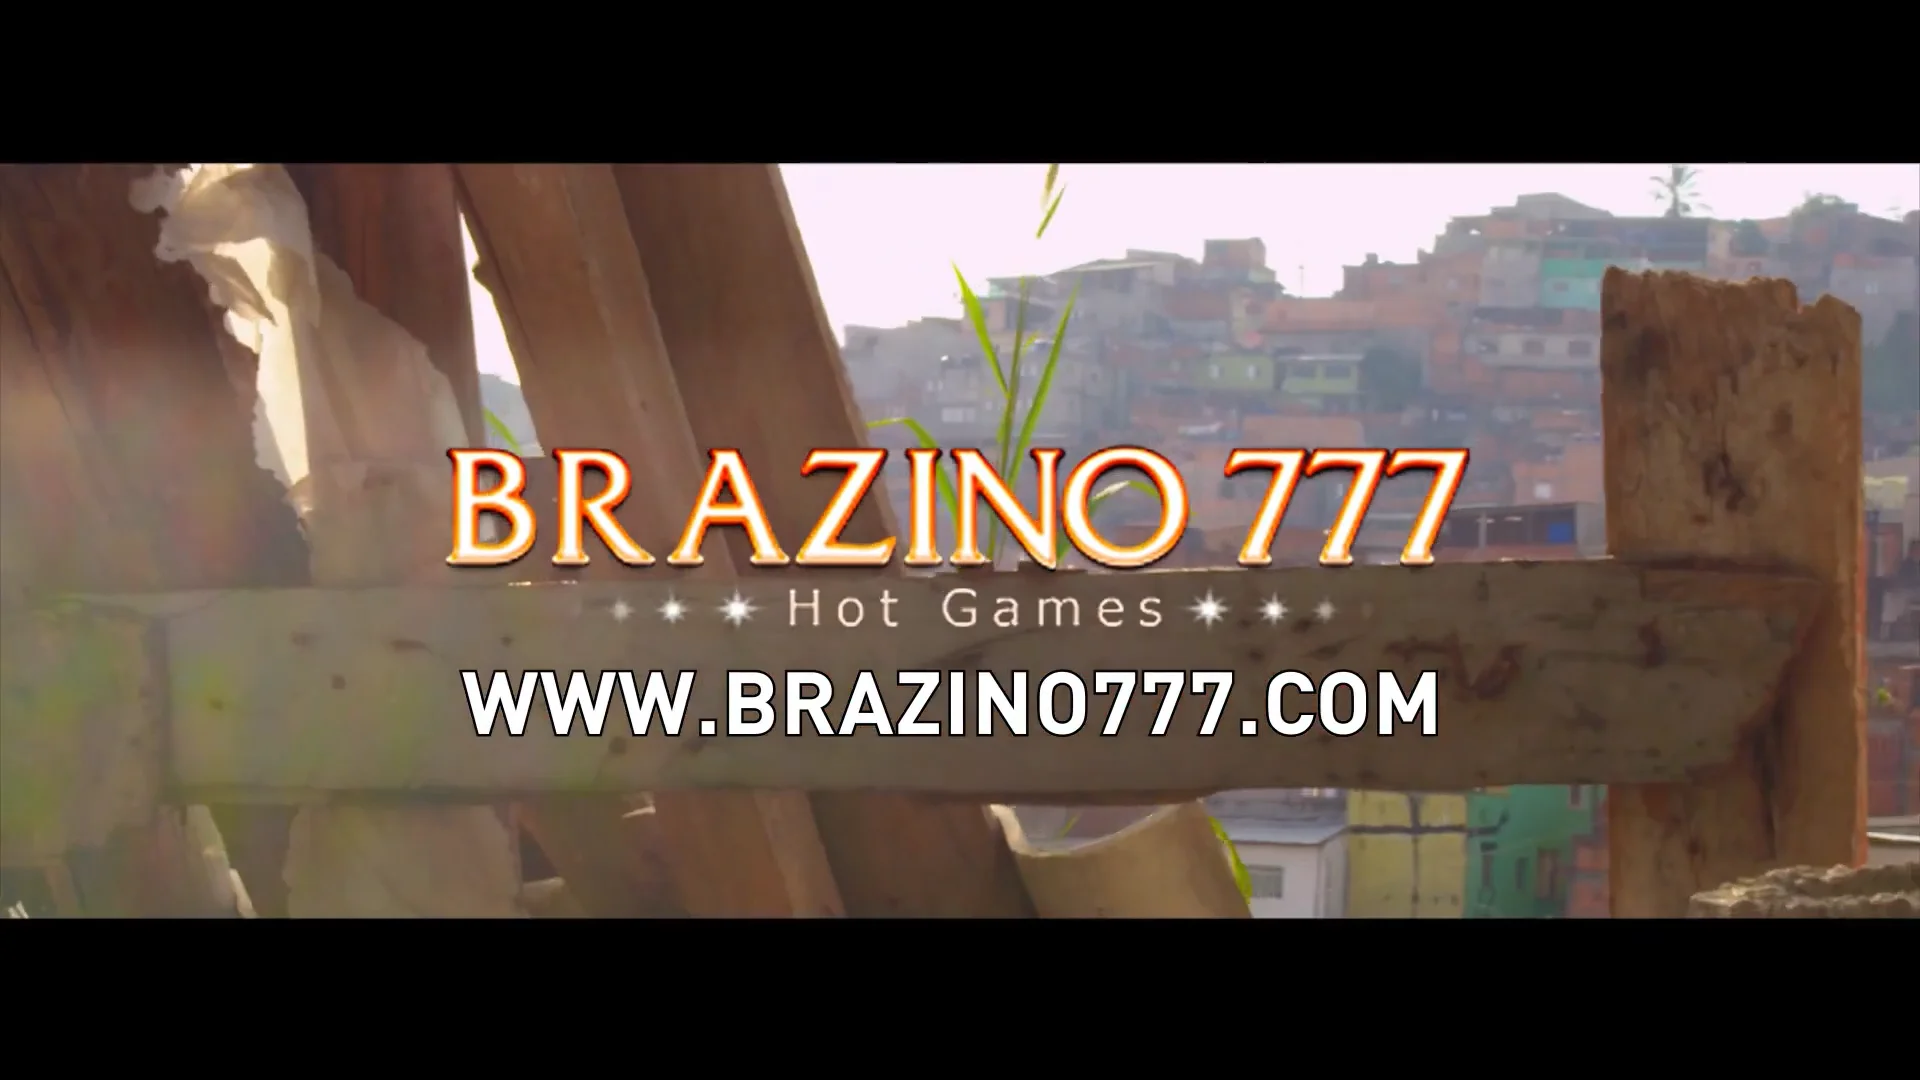 Com o Brazino777, você terá acesso a uma plataforma fácil de usar e com uma interface intuitiva, que permite que jogadores de todos os níveis possam desfrutar e se divertir sem complicações. Além disso, o site oferece uma experiência segura e confiável, garantindo a proteção dos seus dados pessoais e transações financeiras.